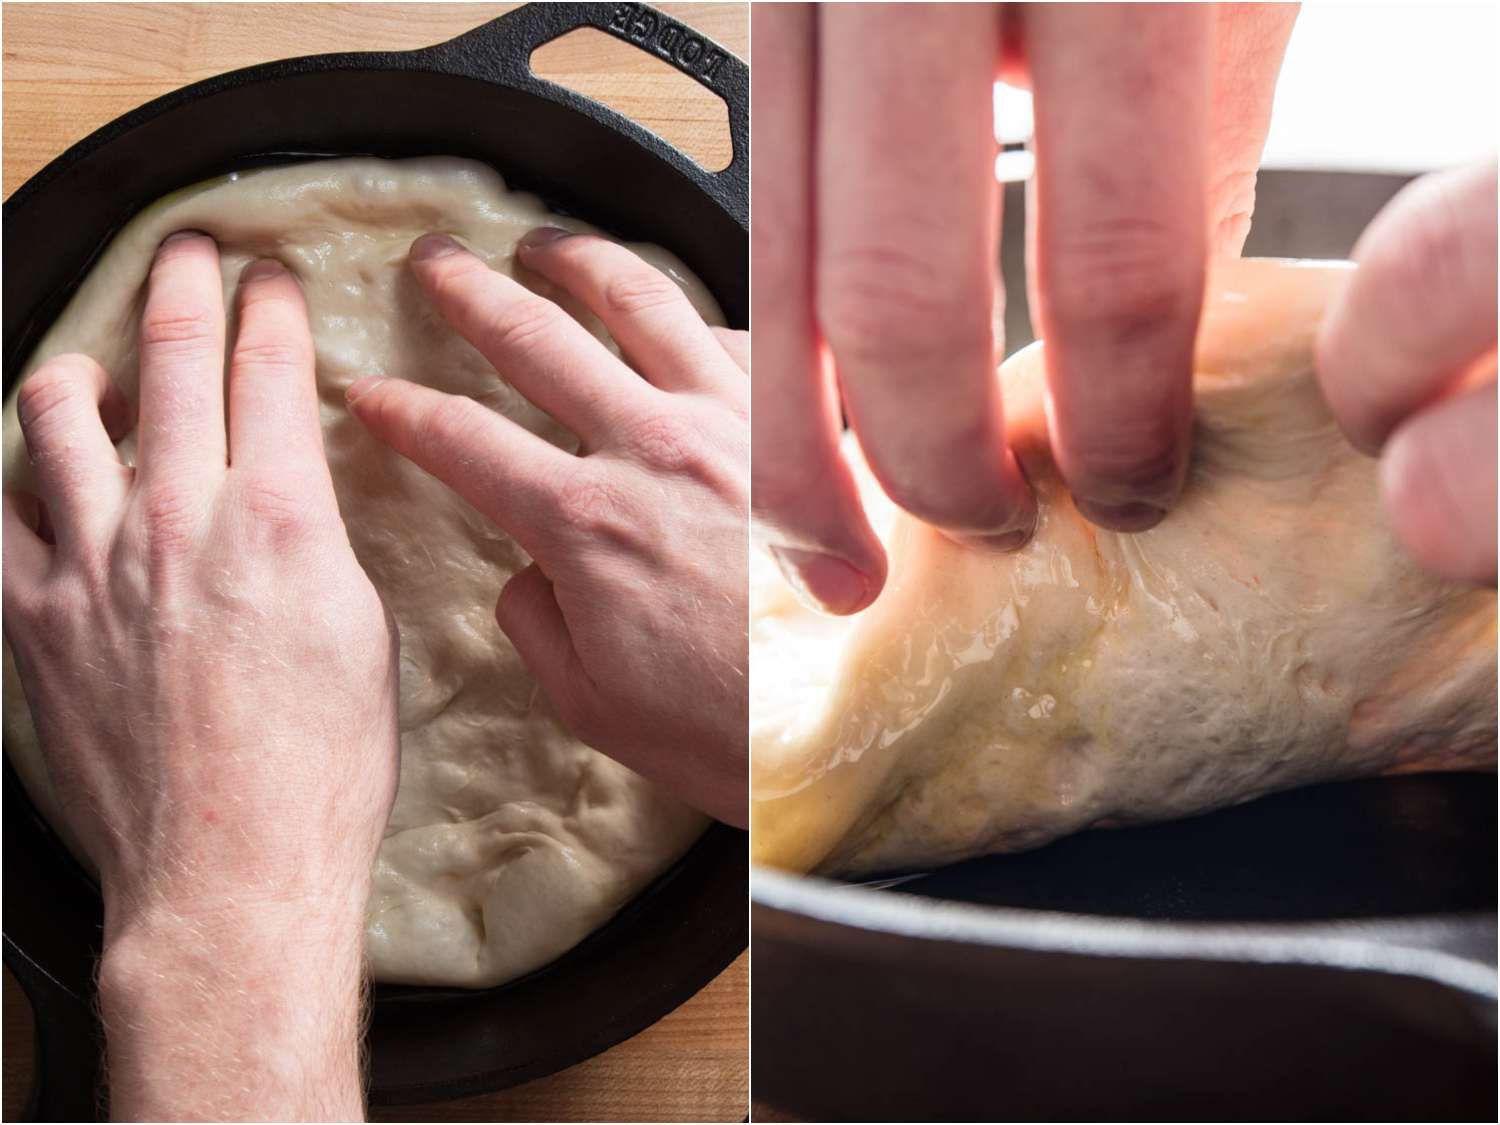 拼贴照片，描绘了在烘焙前触摸披萨面团:用指尖对接表面，抬起边缘释放滞留的空气。gydF4y2Ba